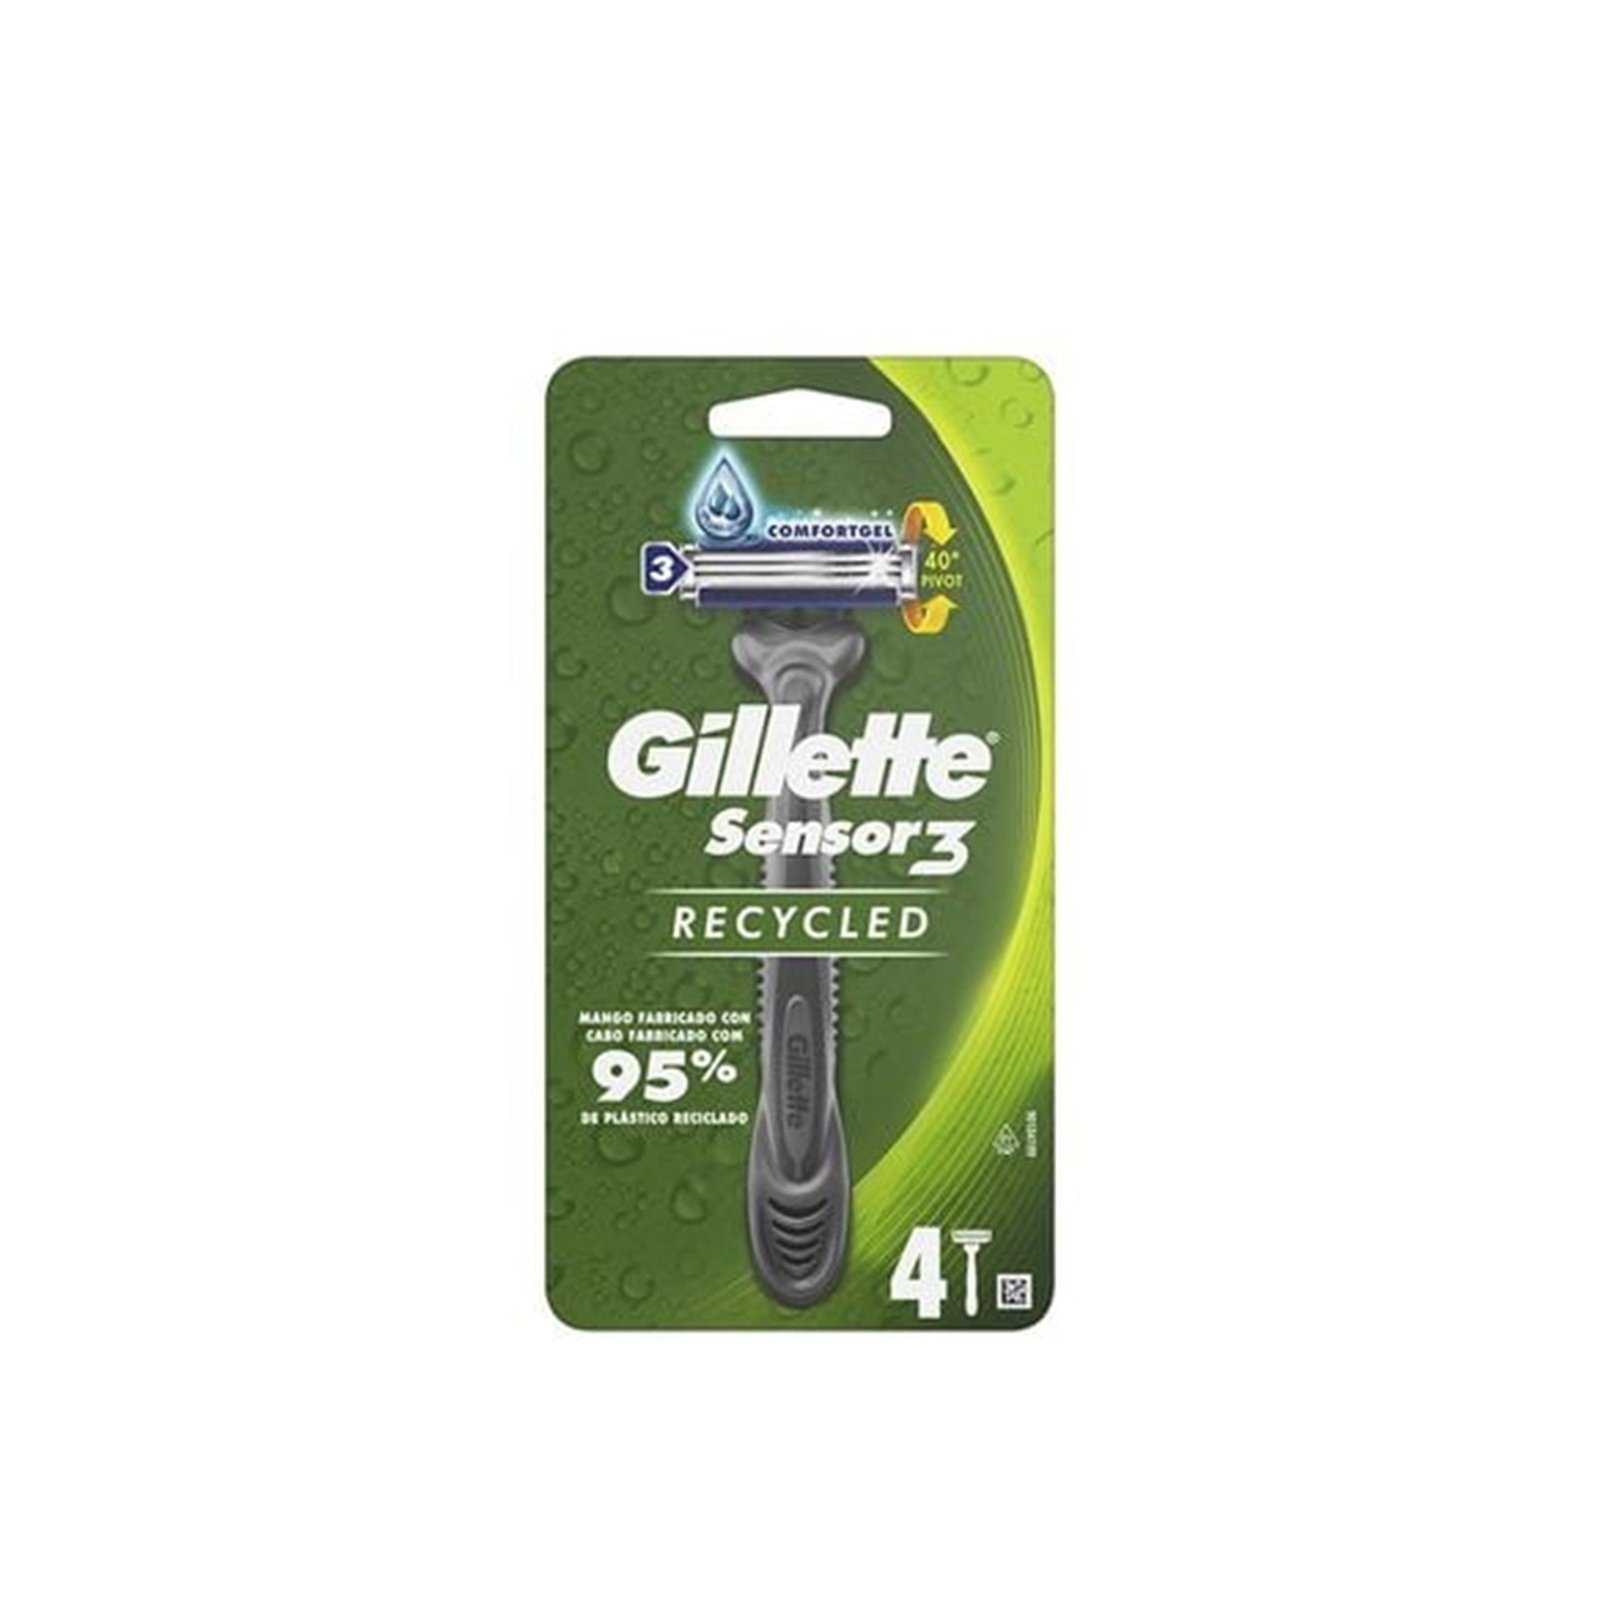 Gillette Sensor3 Recycled Razors x4